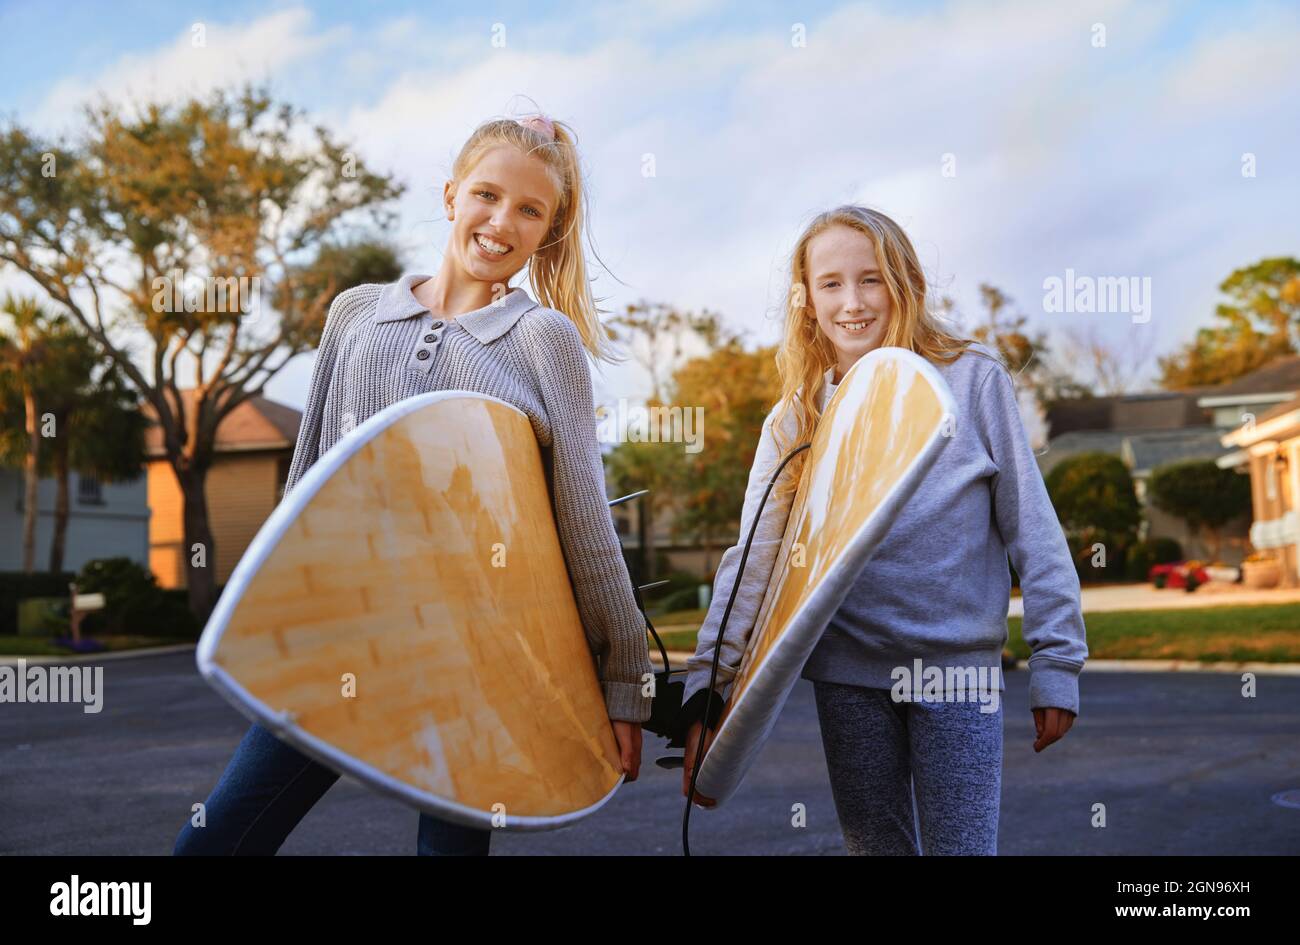 Lächelnde blonde Mädchen mit Surfbrettern, die auf der Straße stehen Stockfoto